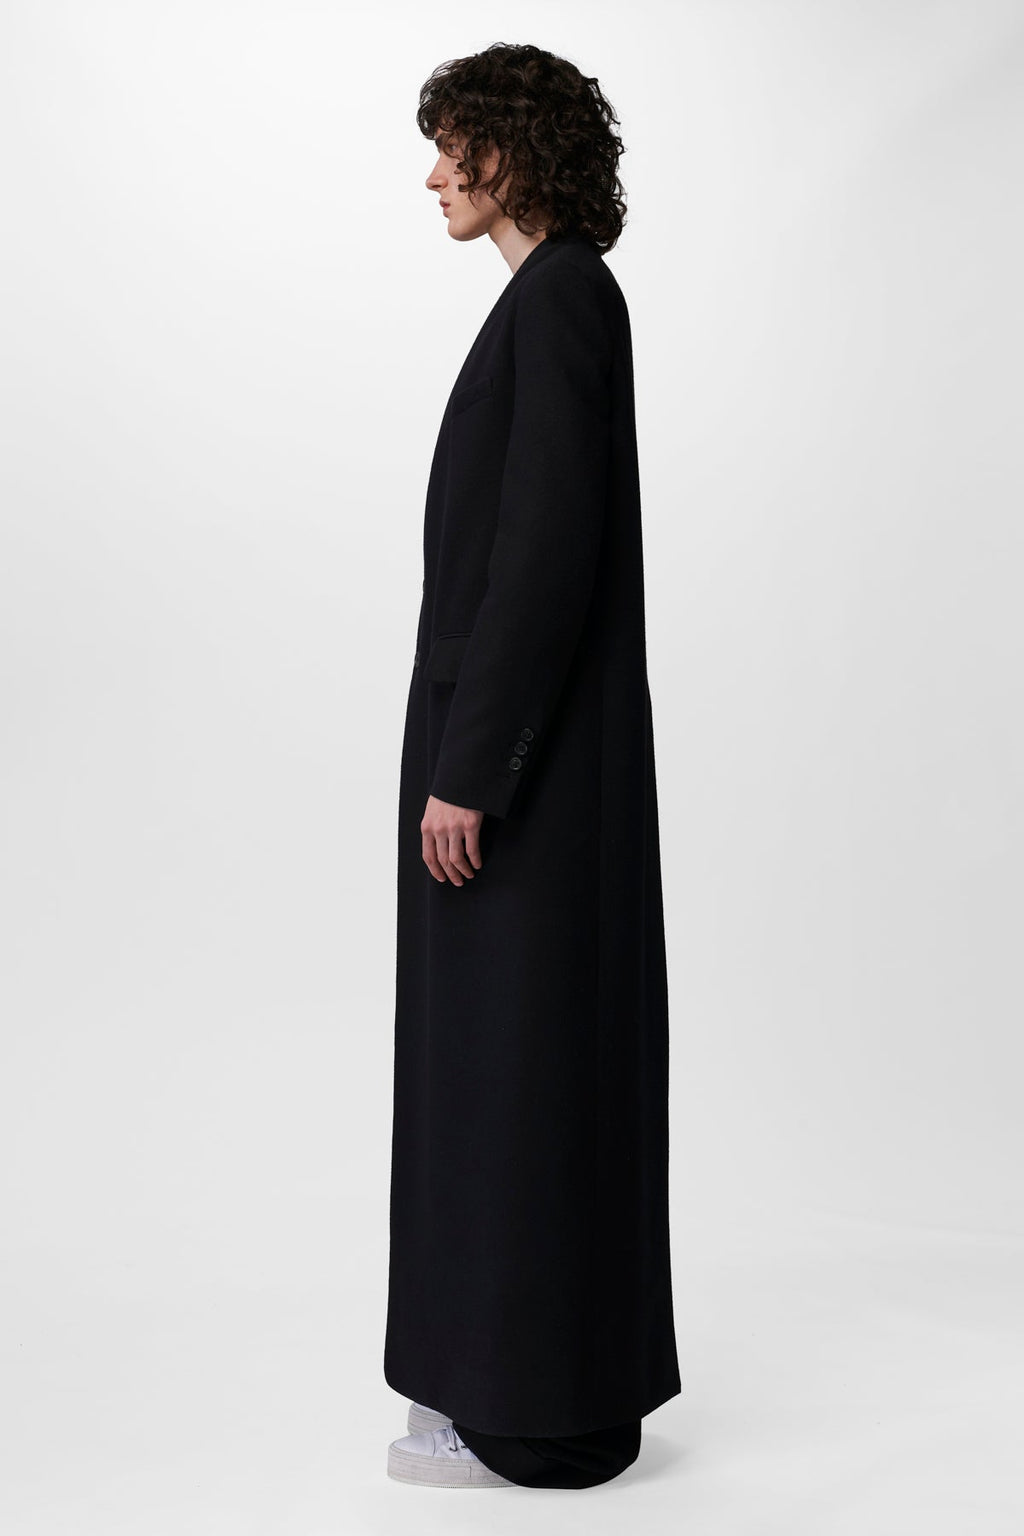 Francois Standard Tailored – Coat Demeulemeester Ann